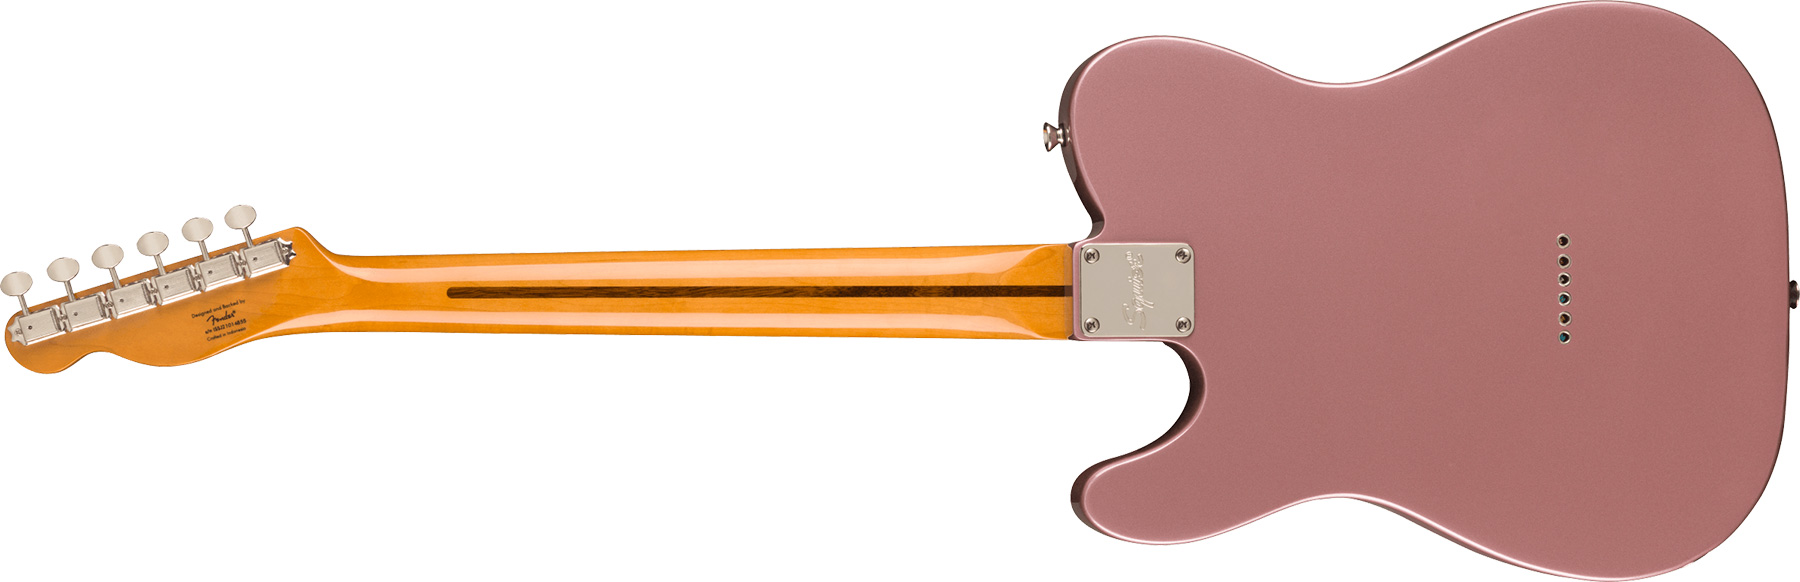 Squier Tele '50s Parchment Pickguard Classic Vibe Fsr 2s Ht Mn - Burgundy Mist - Guitarra eléctrica con forma de tel - Variation 1